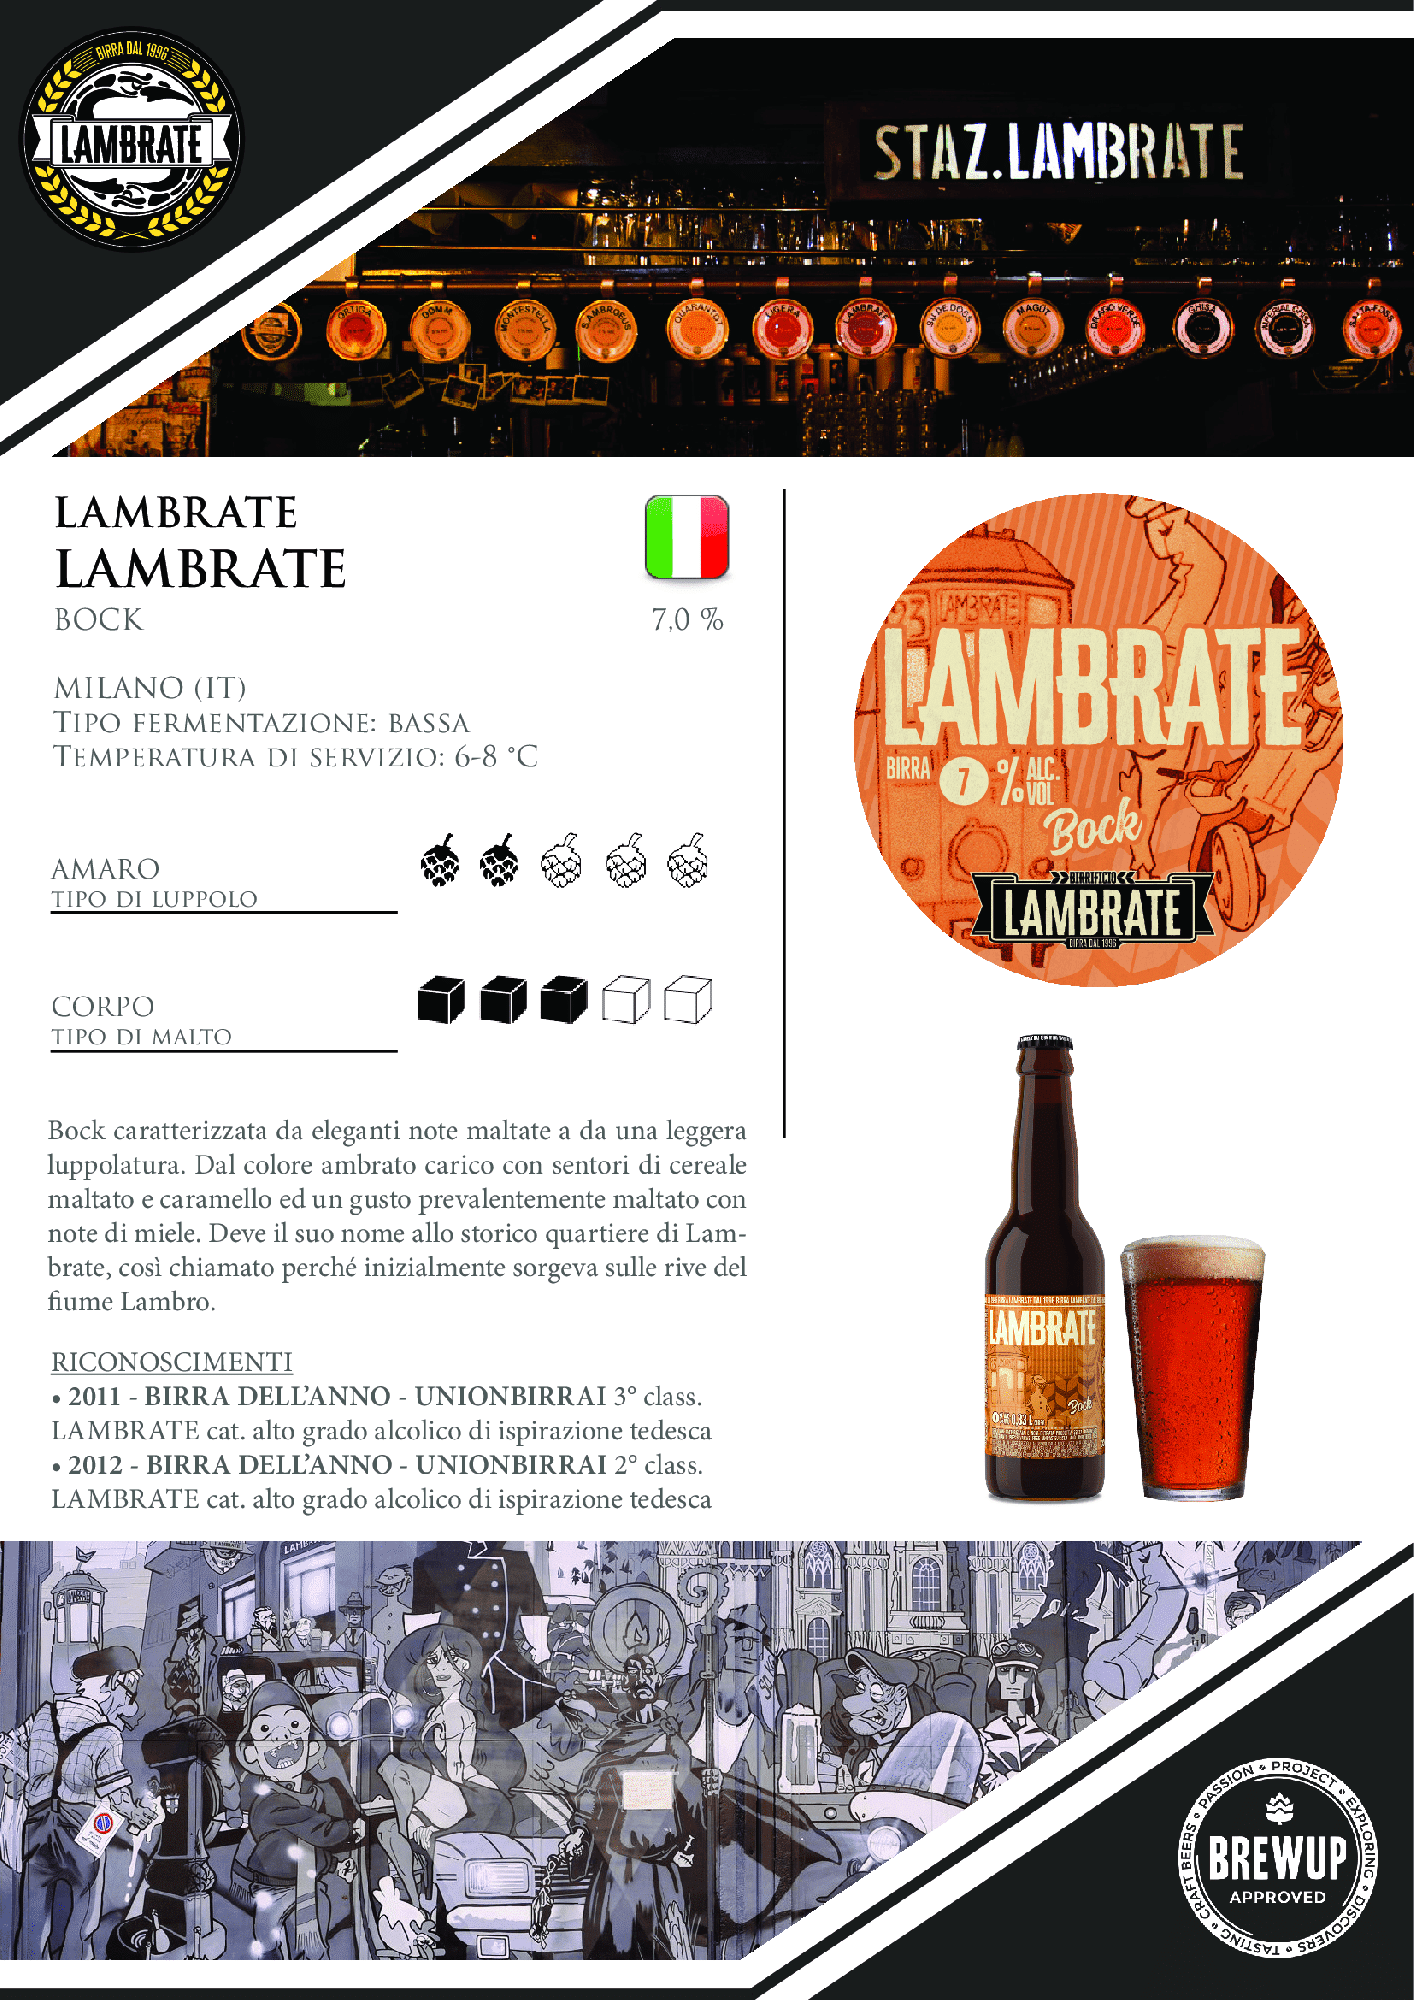 Lambrate Lambrate e1689598764177